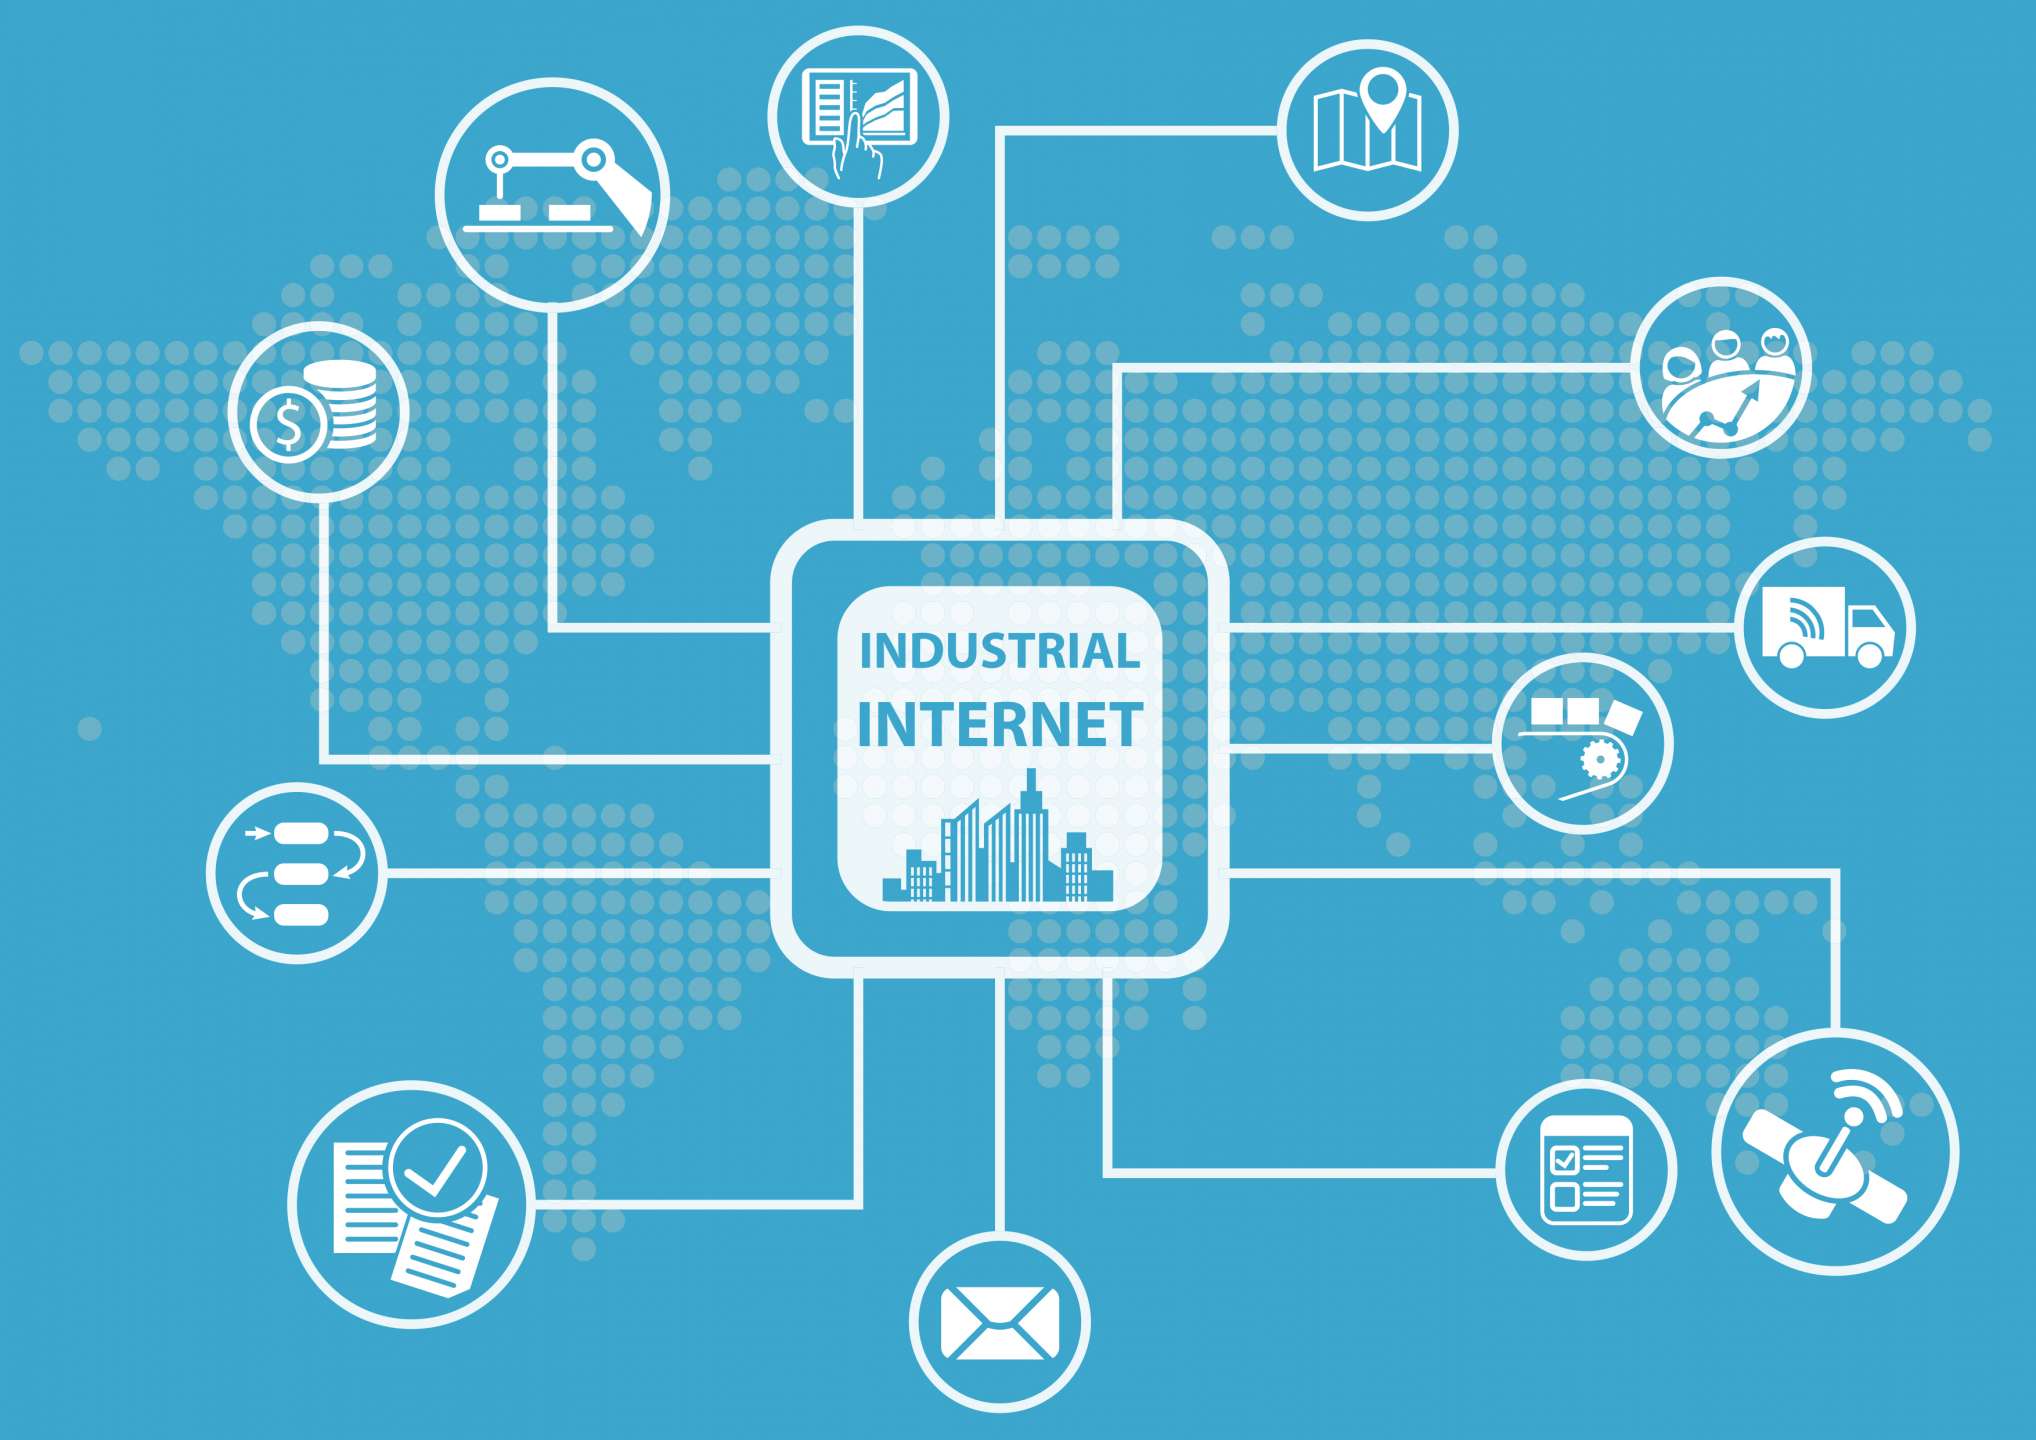 Industrial Internet of Things (IIoT)